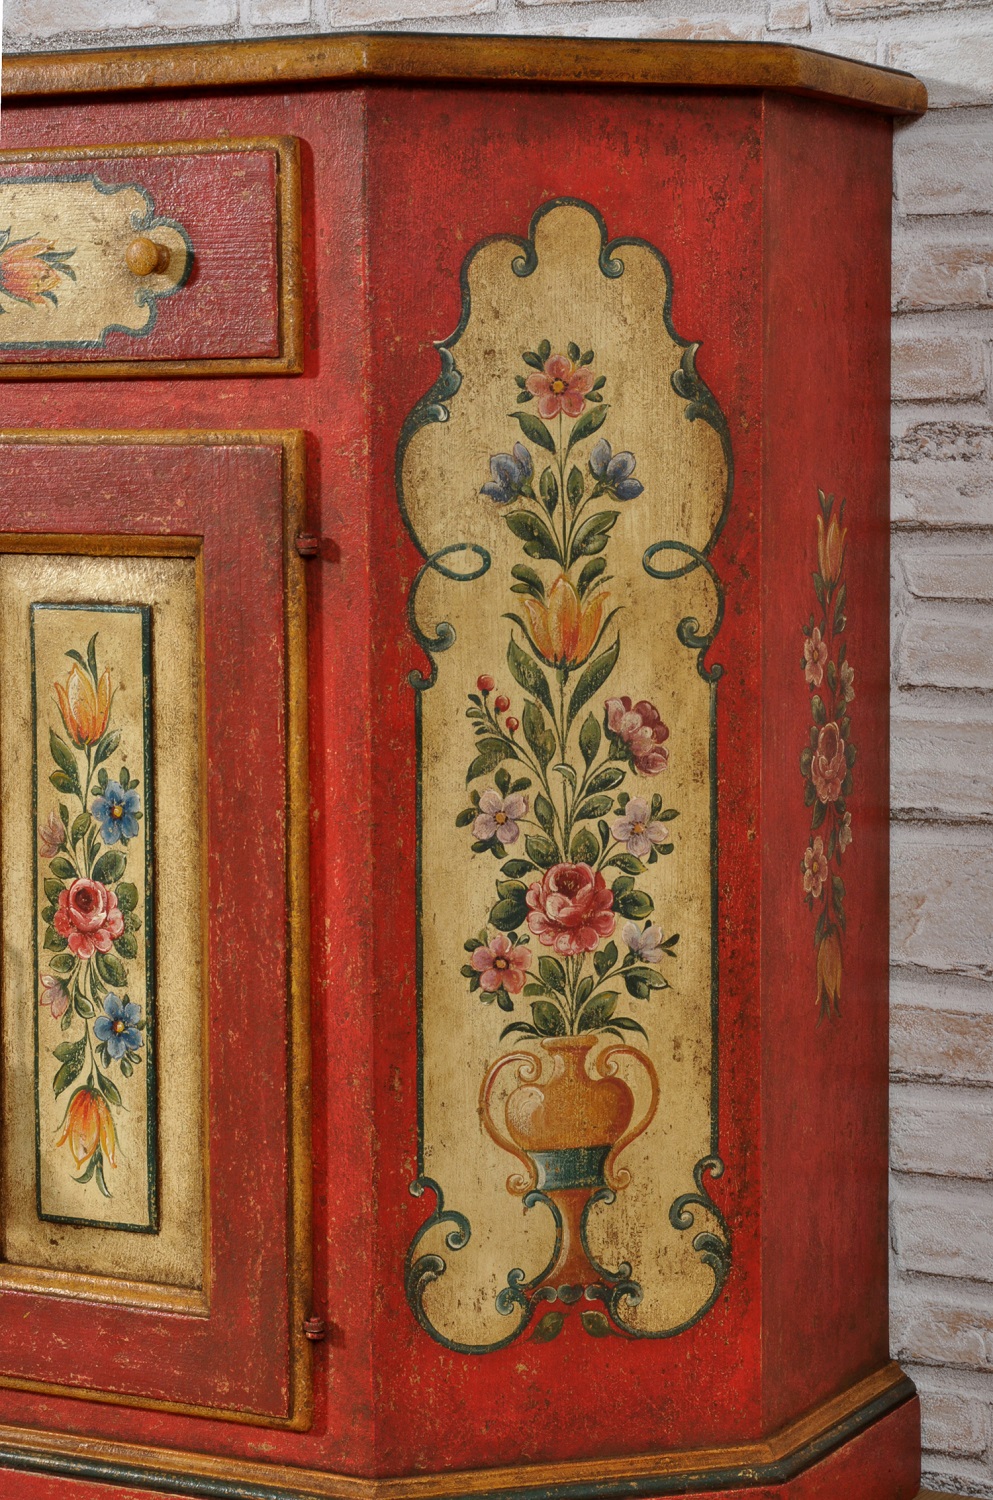 scantonatura laccata riproducibile su misura tonalità rosso veneziano con decorazioni in stile barocco e floreali bianco patinato eseguita a mano